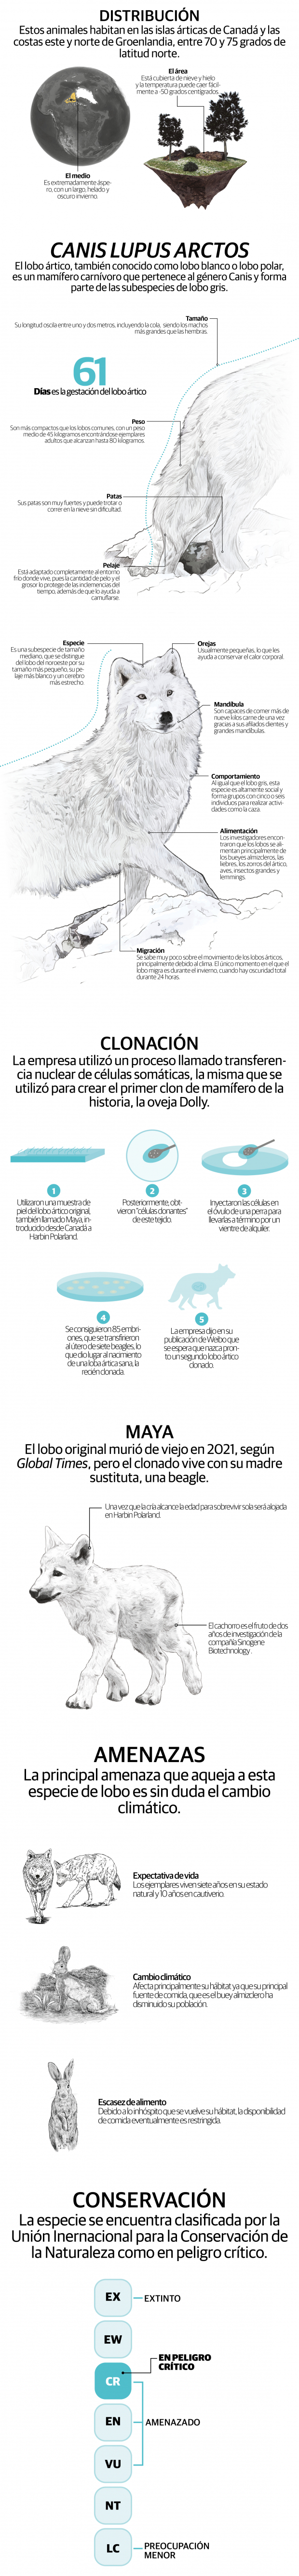 Maya, primer lobo ártico clonado en un esfuerzo de conservación histórico